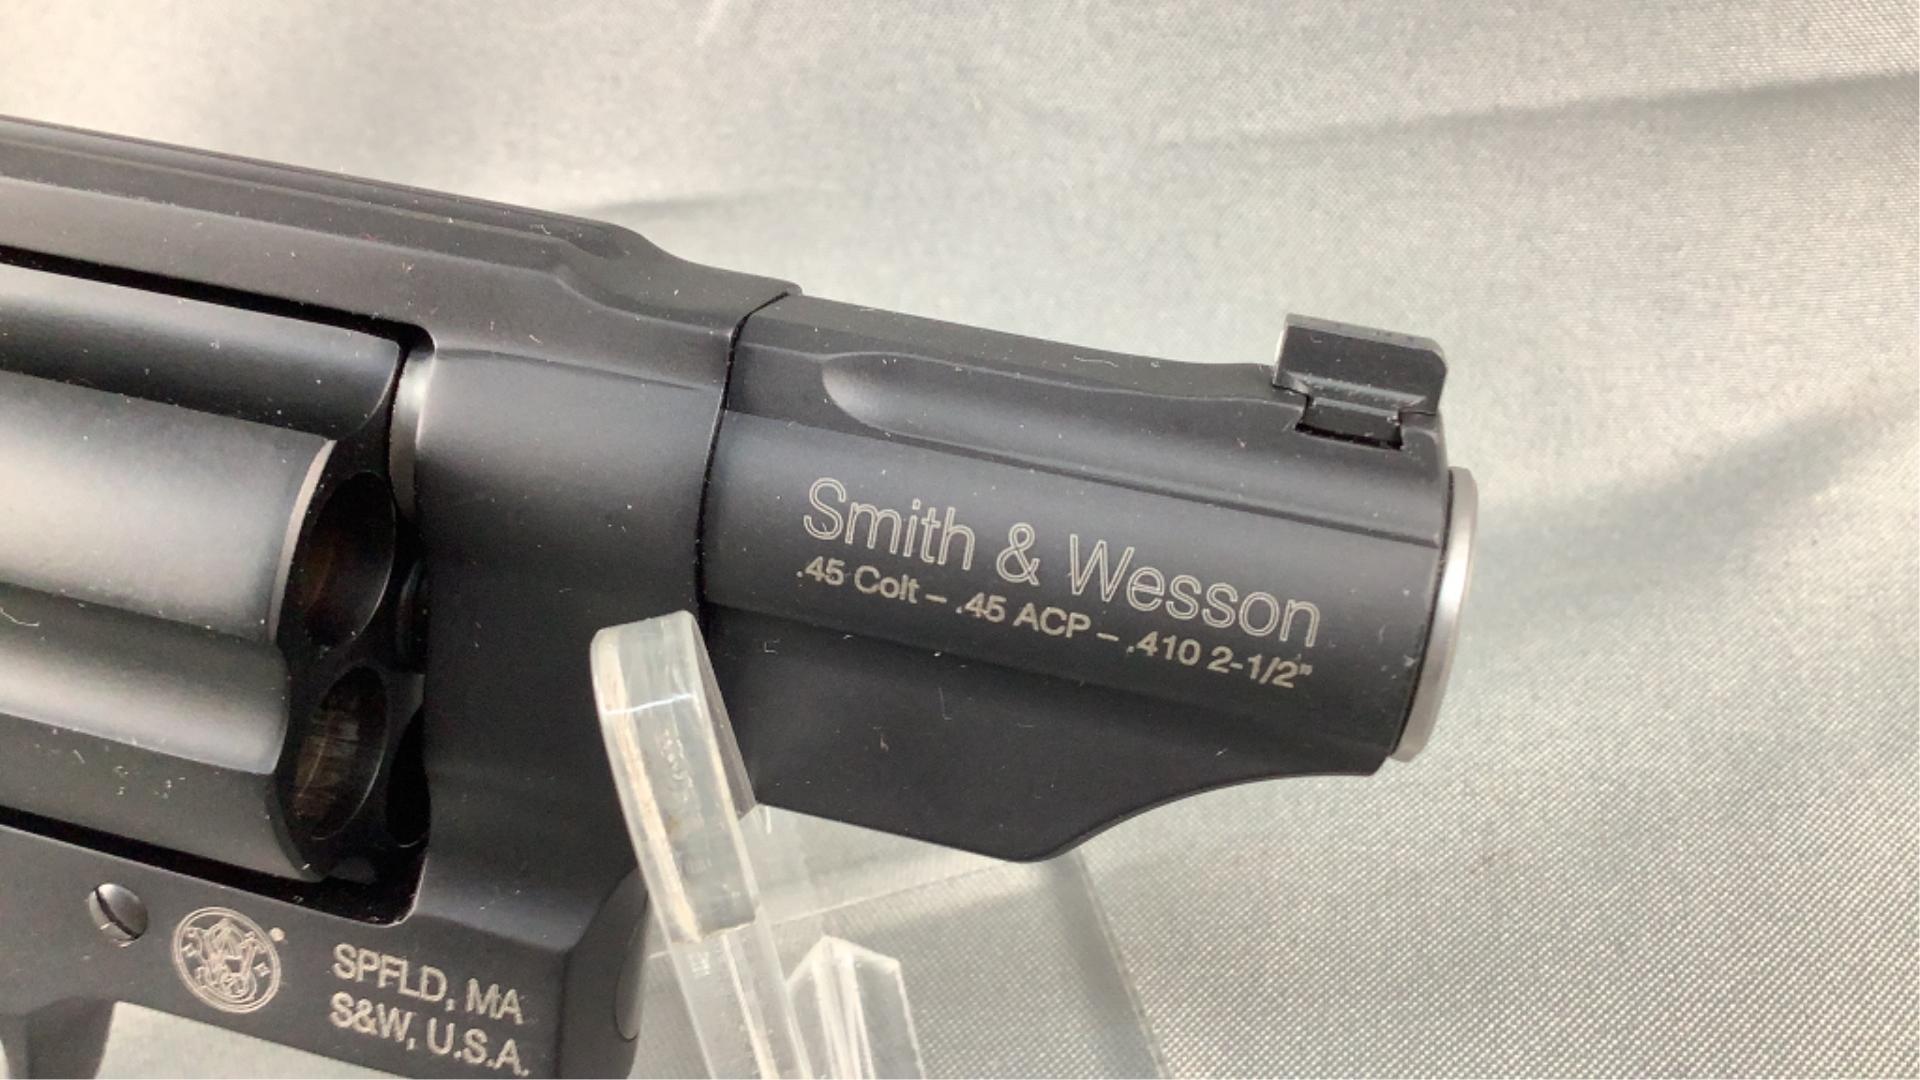 Smith & Wesson Governor .45 Colt-.45 ACP-.410